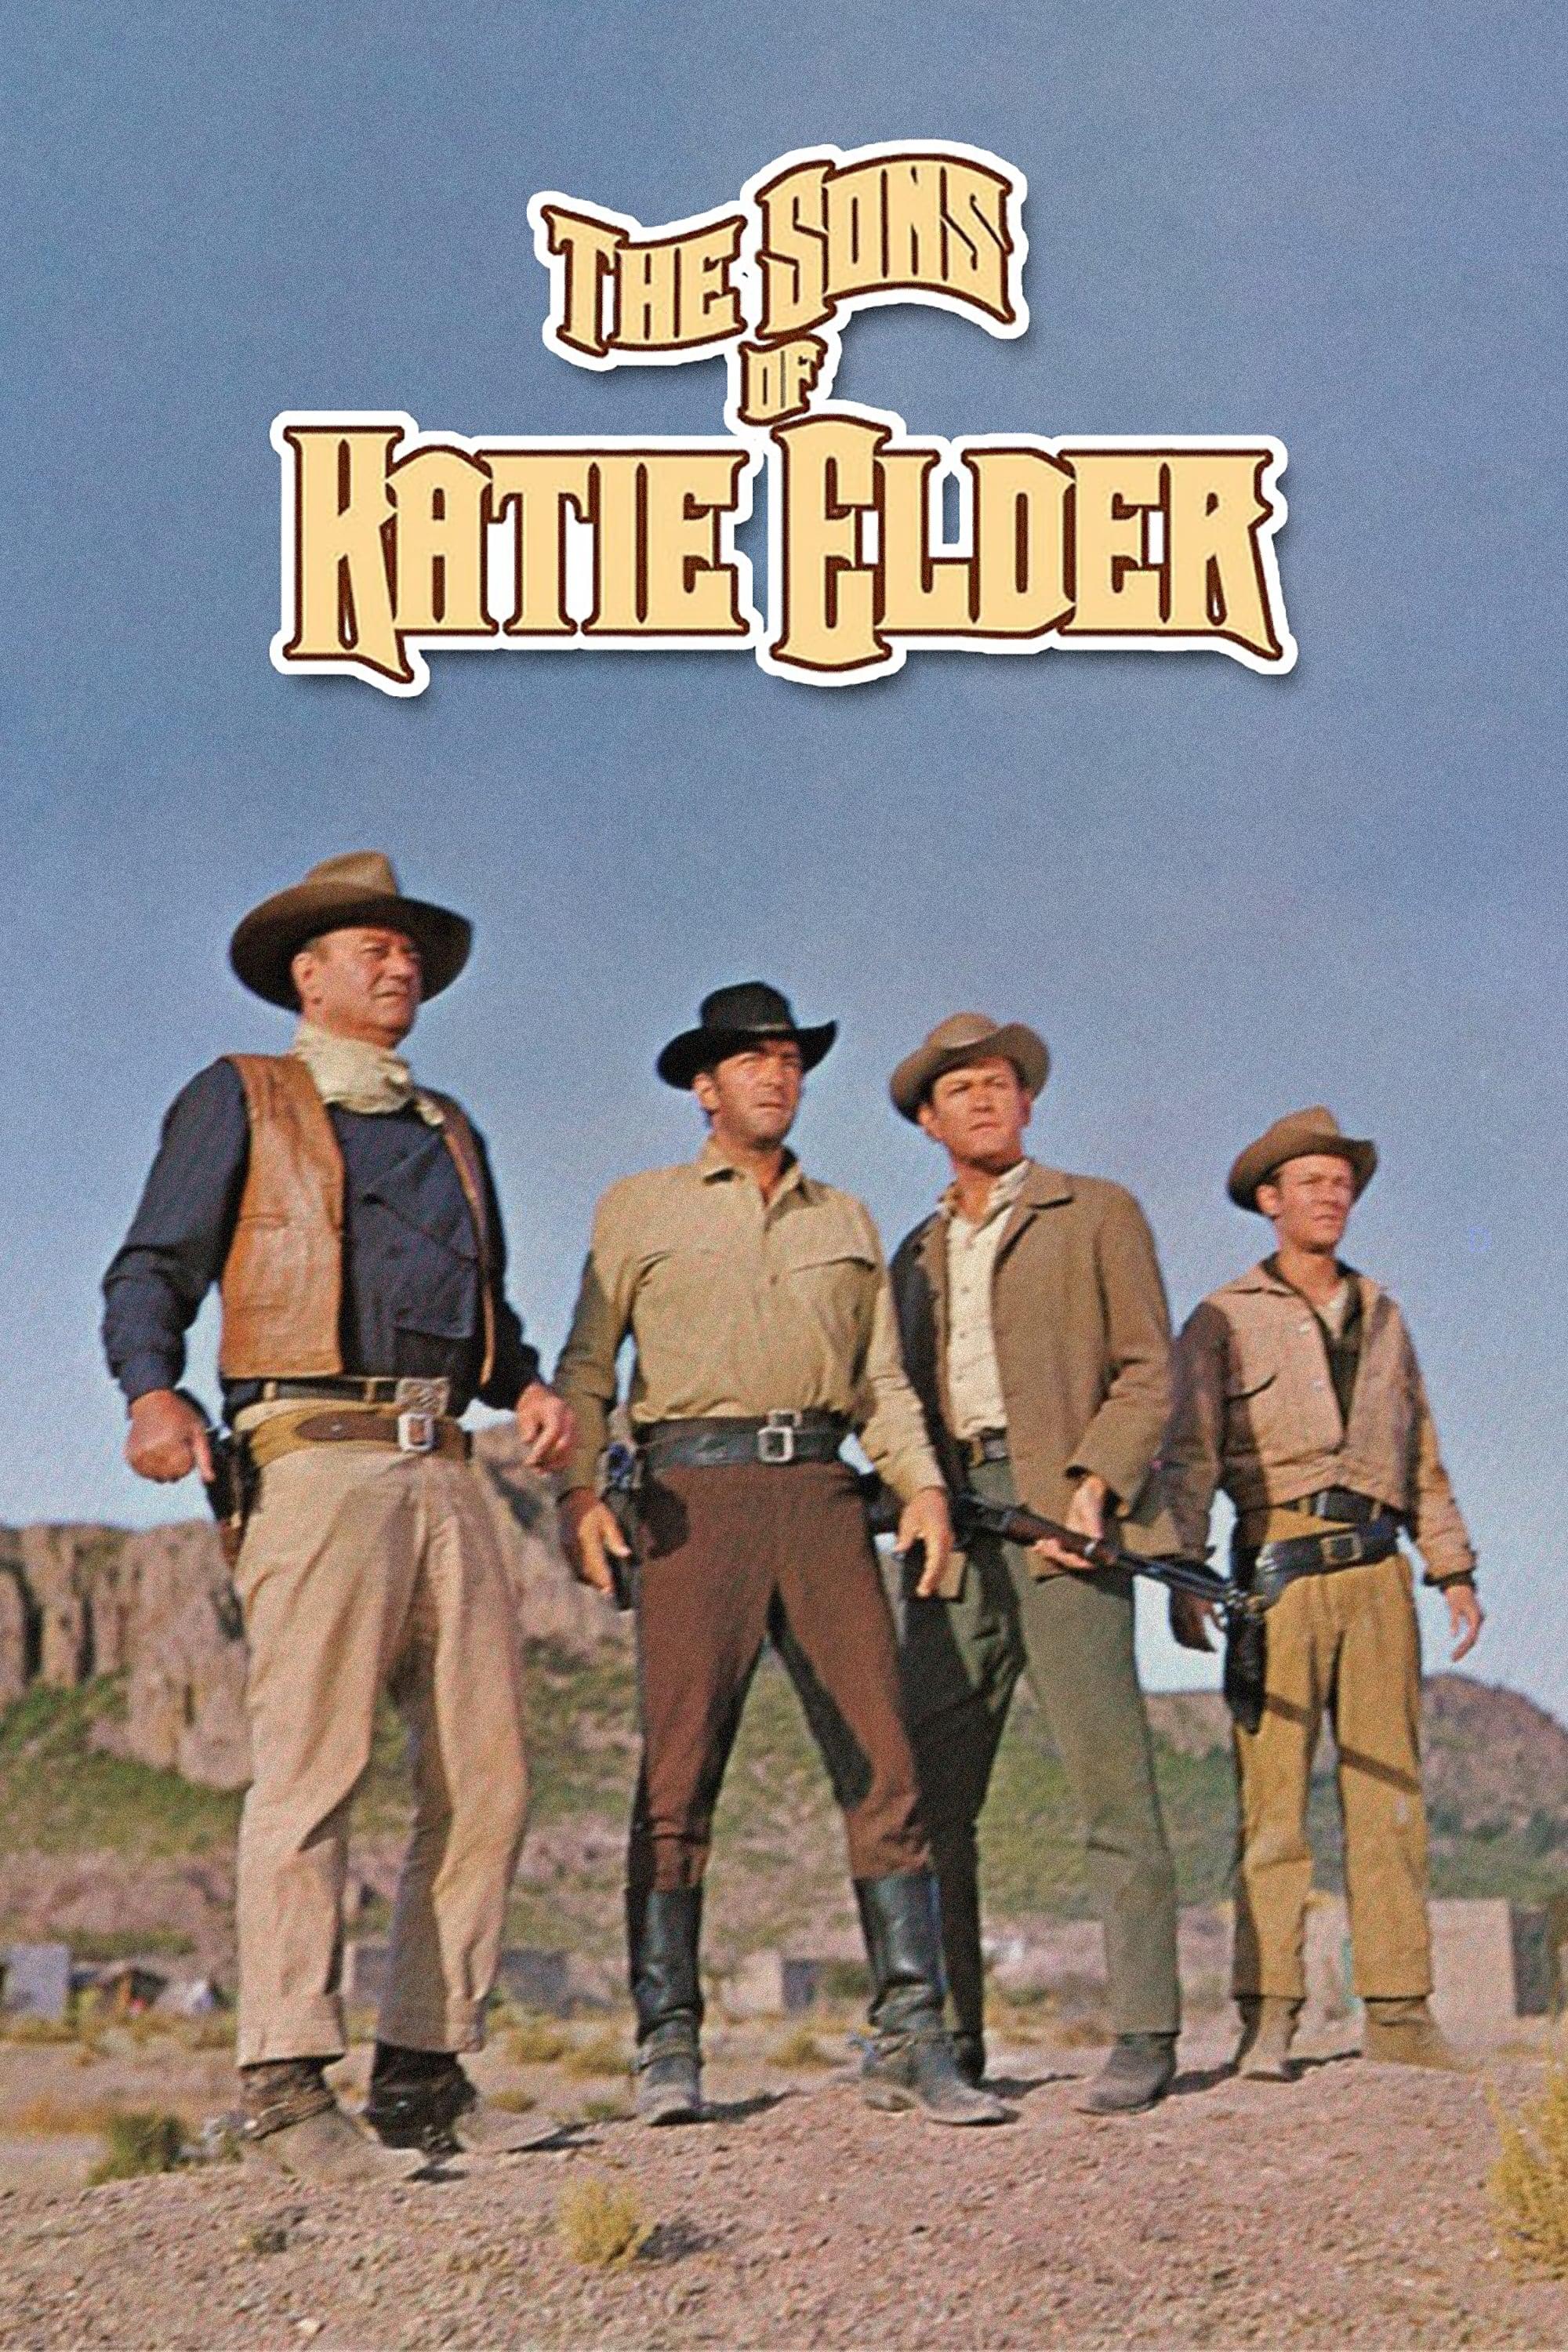 The Sons of Katie Elder poster